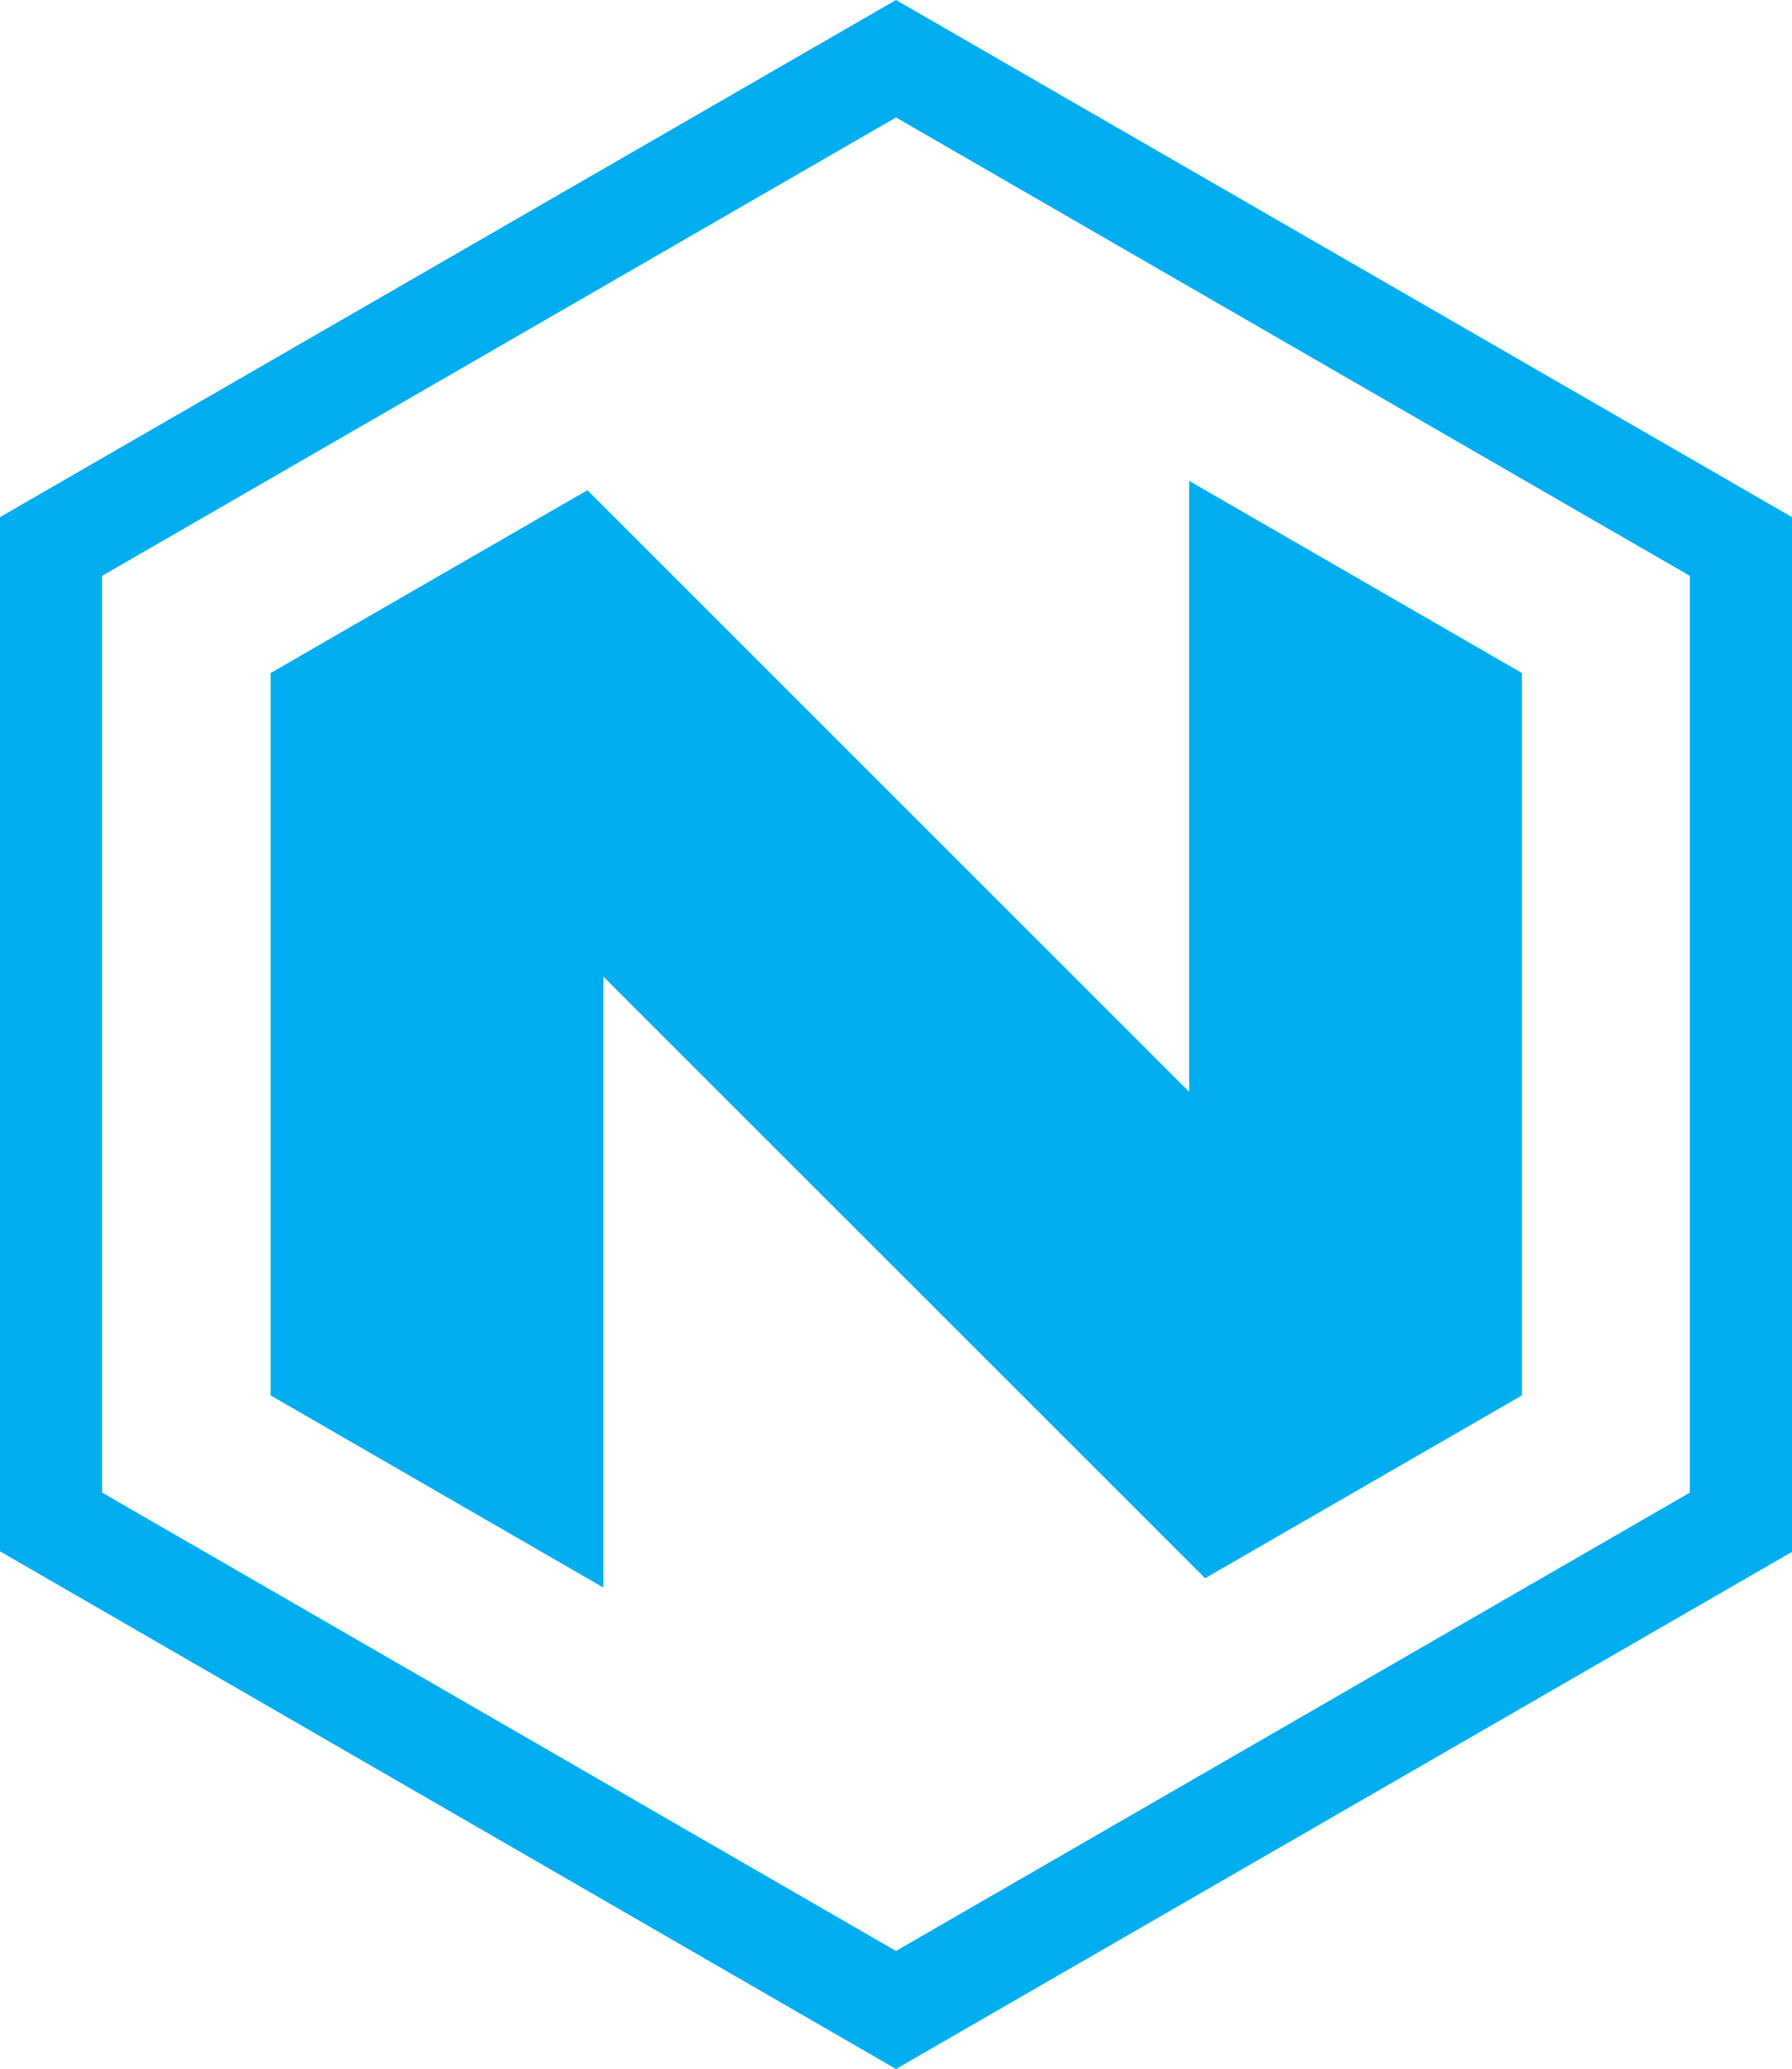 Nikola Motor Company Logo